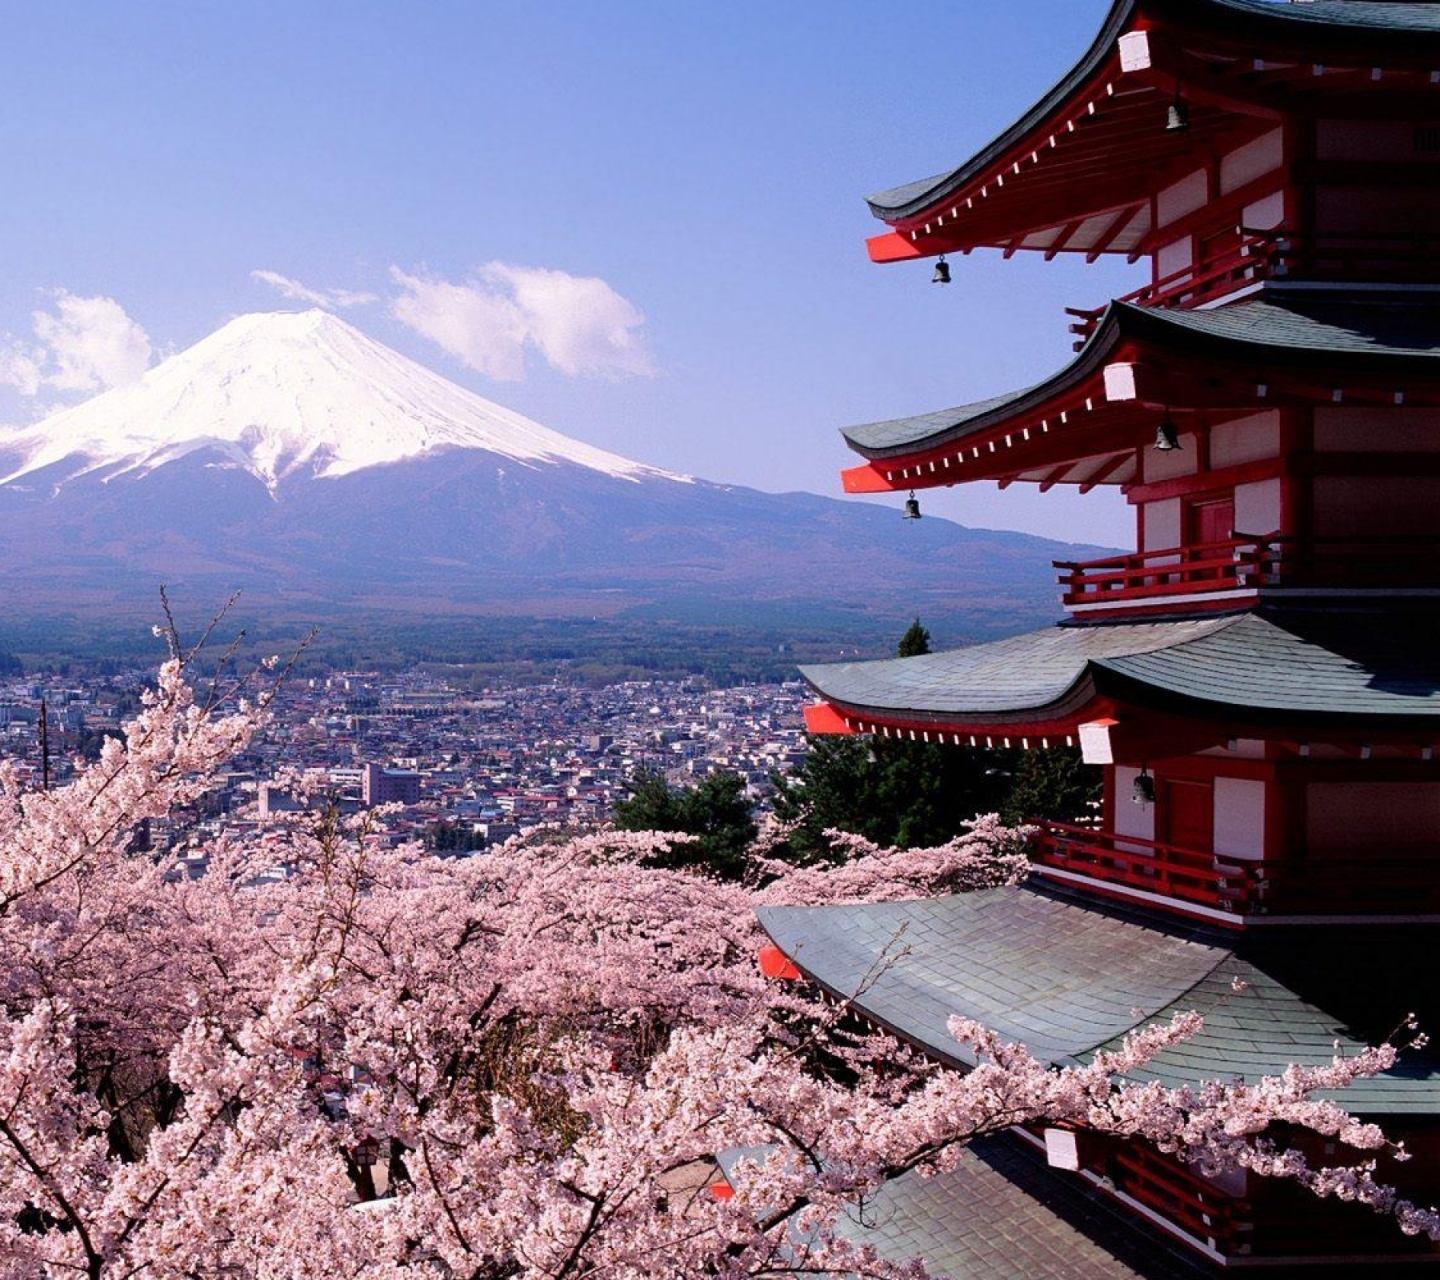 Descarga gratuita de fondo de pantalla para móvil de Japón, Monte Fuji, Volcanes, Tierra/naturaleza.